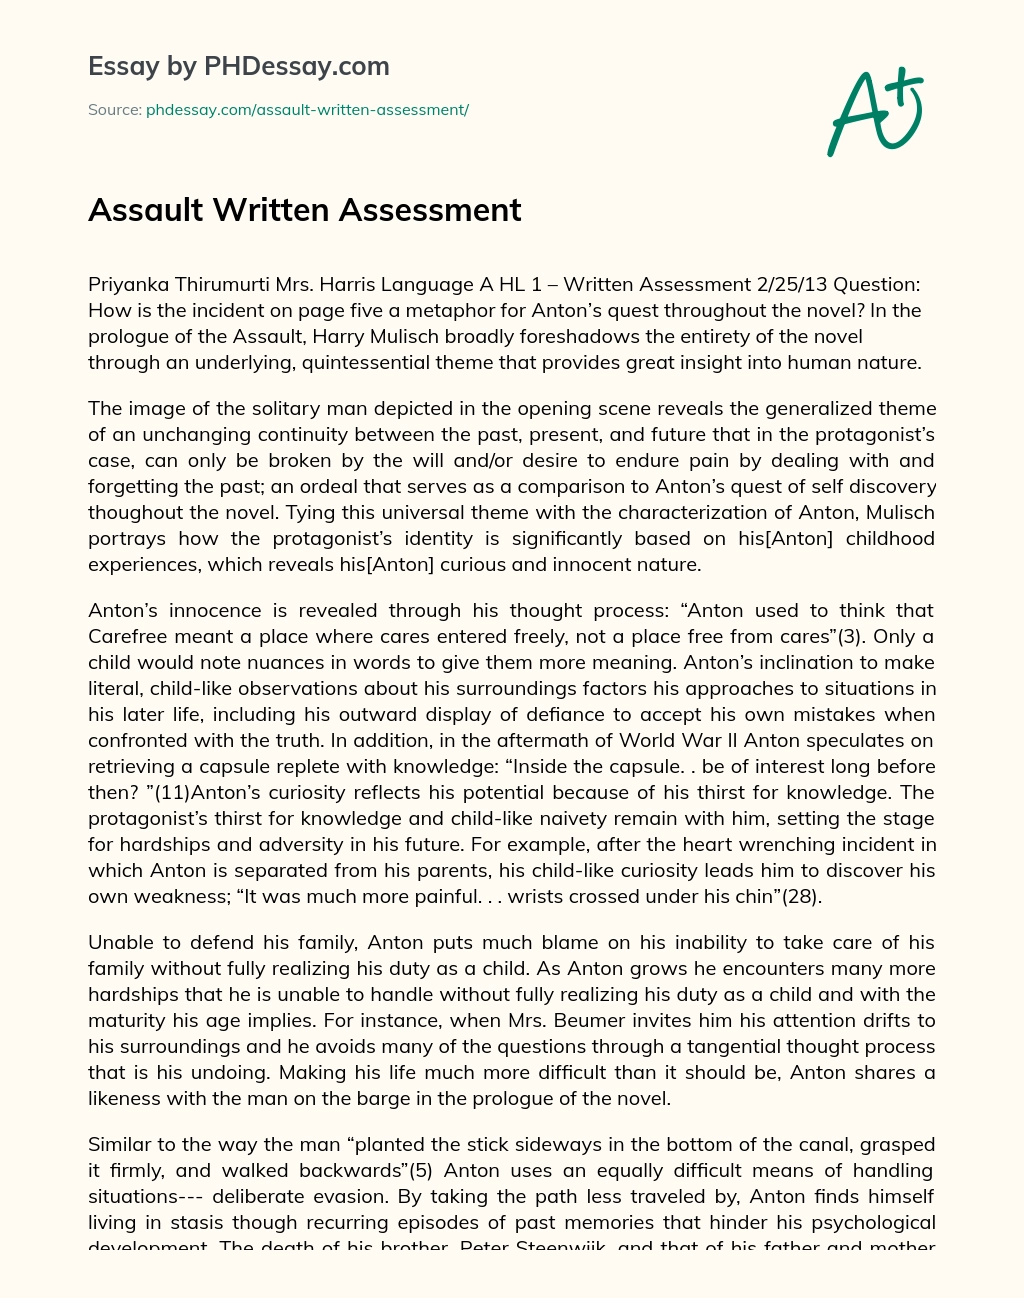 Assault Written Assessment essay